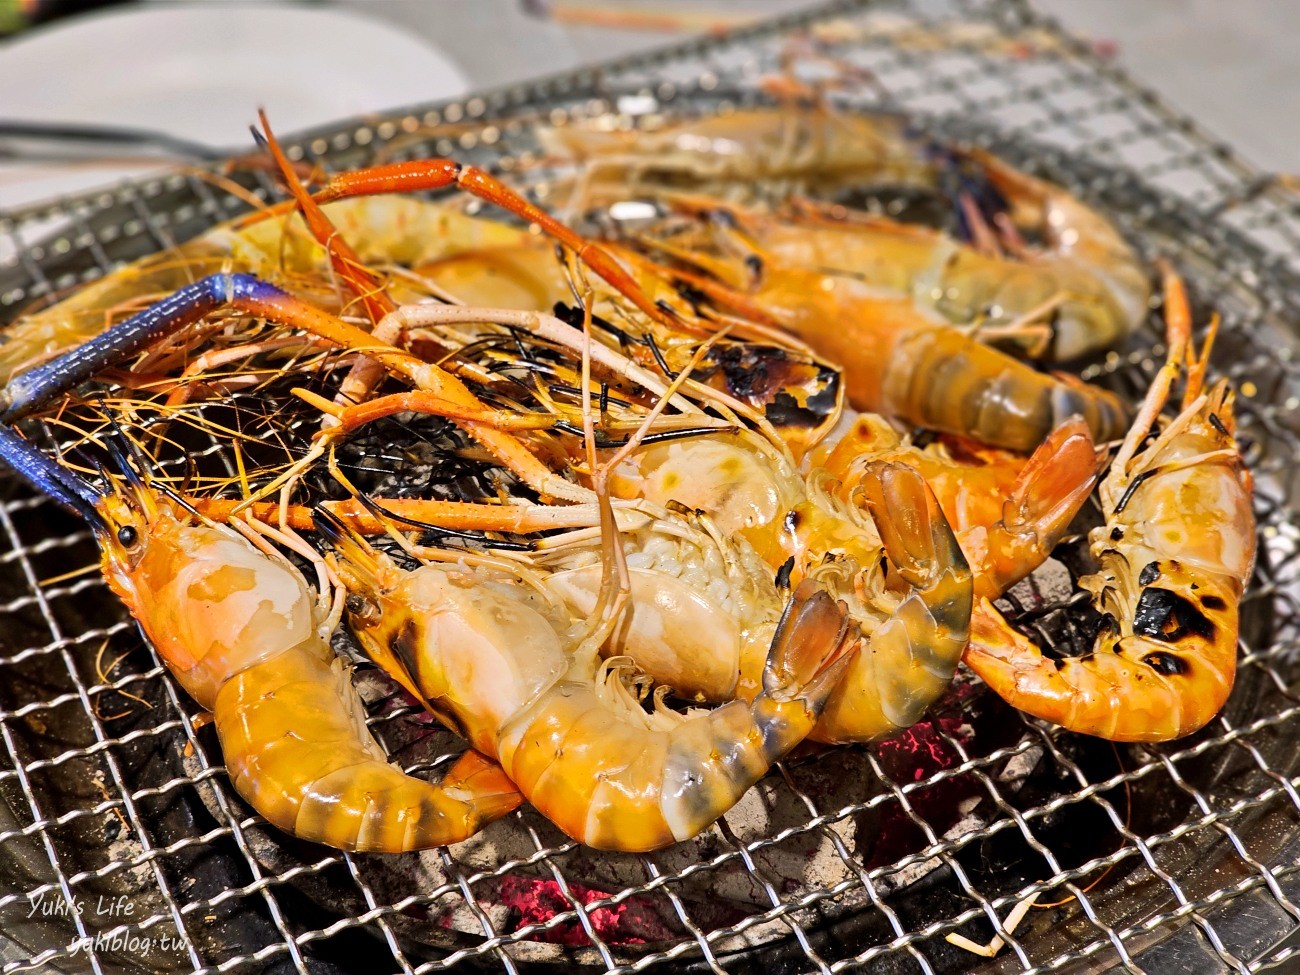 曼谷海鮮不限時吃到飽推薦【Mungkorn Seafood】只要499~泰國蝦.生醃.螃蟹.蔬果任你吃 - yukiblog.tw